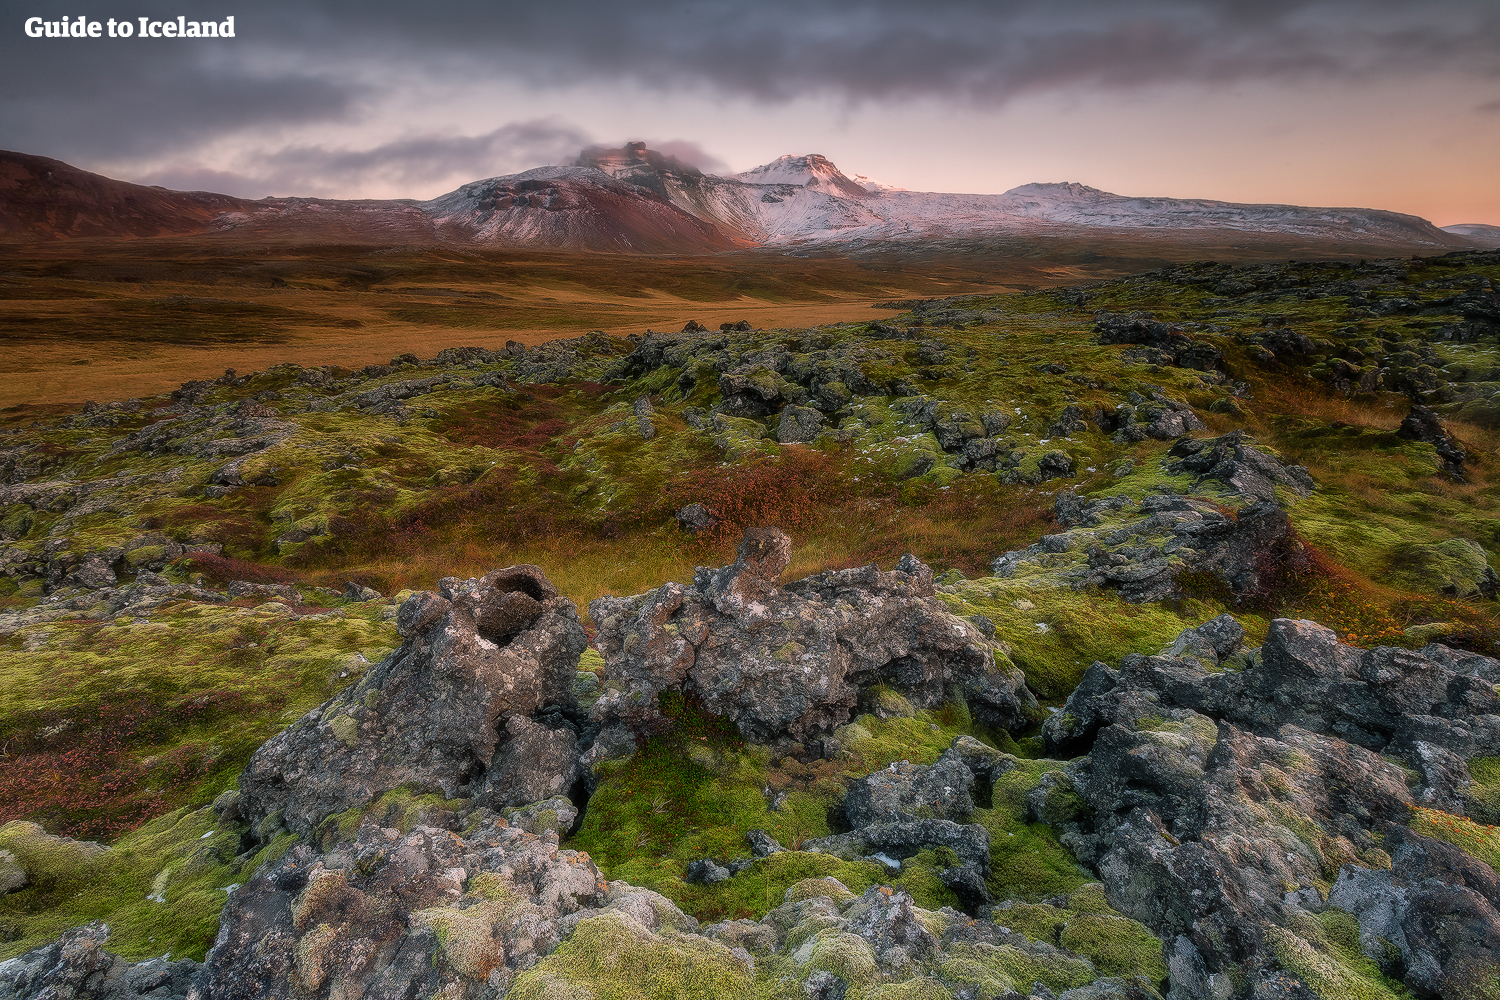 Pakketreizen in de zomer bieden een breed scala aan opties voor diegenen die de ontzagwekkende landschappen van IJsland onder de middernachtzon willen bewonderen.